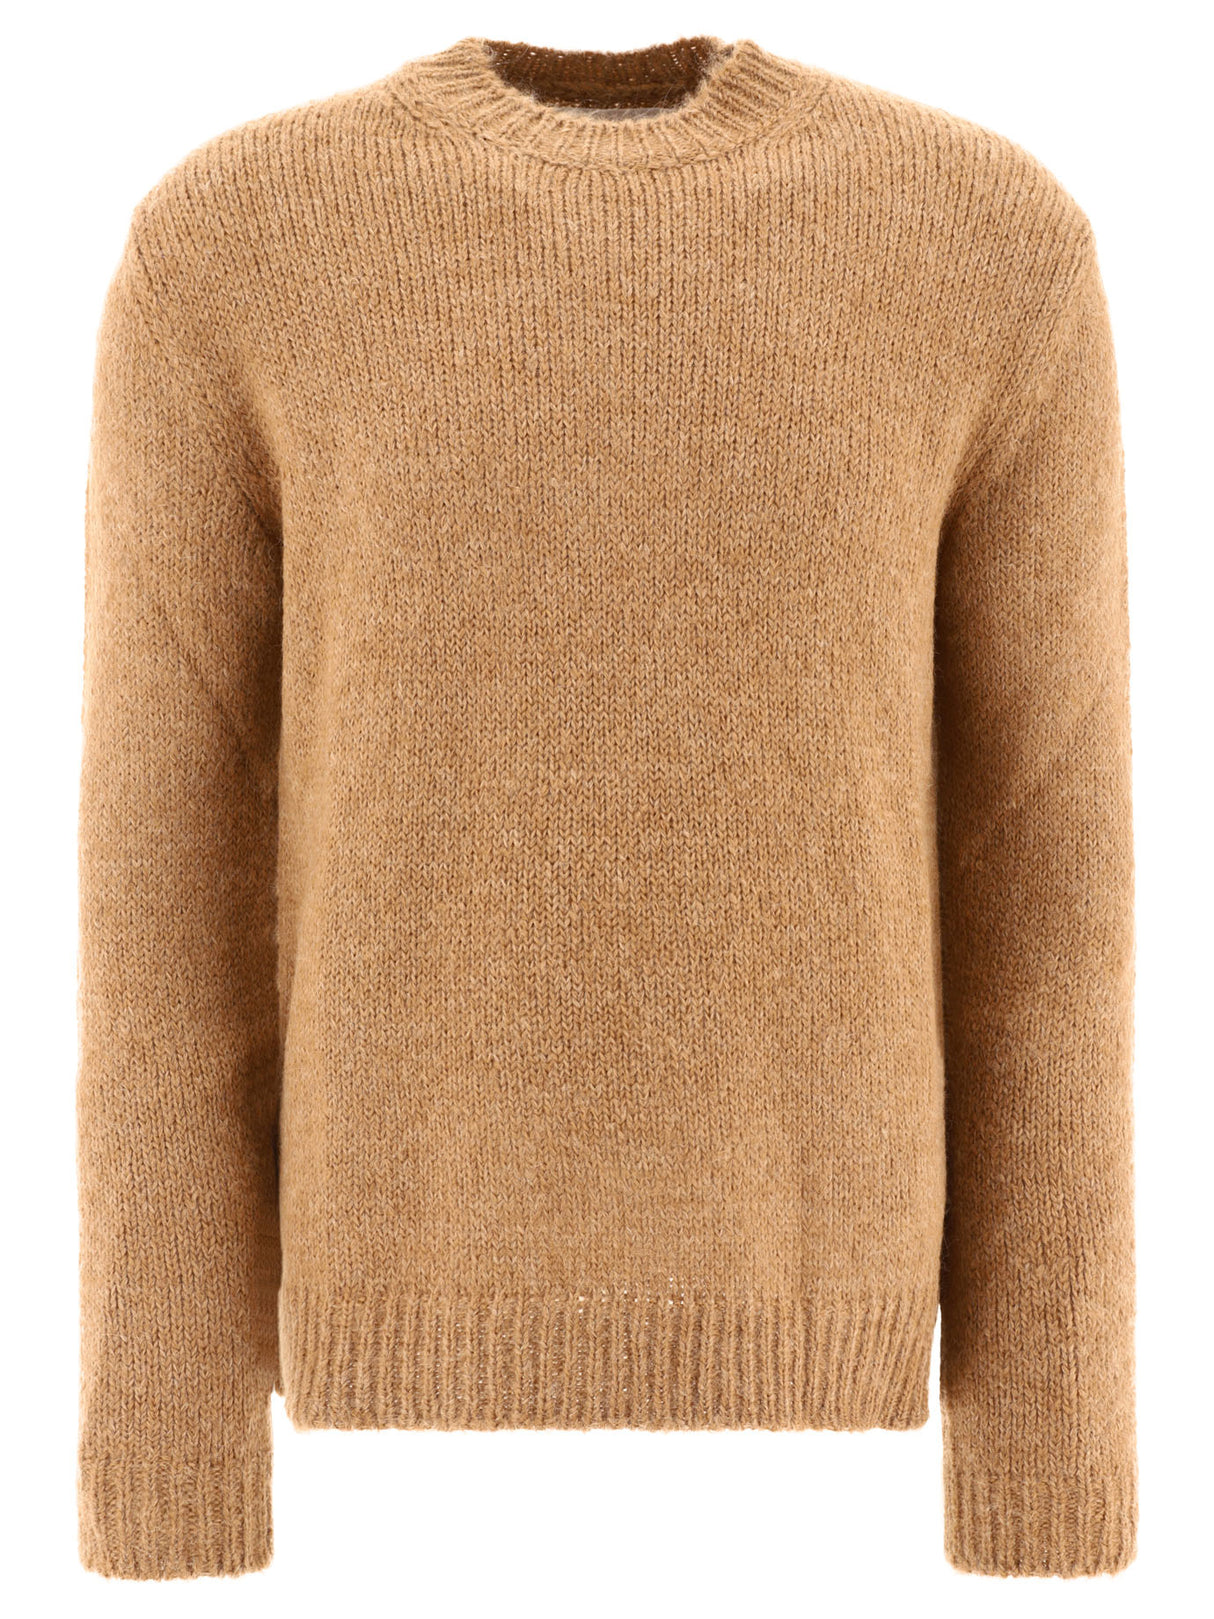 JIL SANDER Soft Tan Melange Sweater for Men